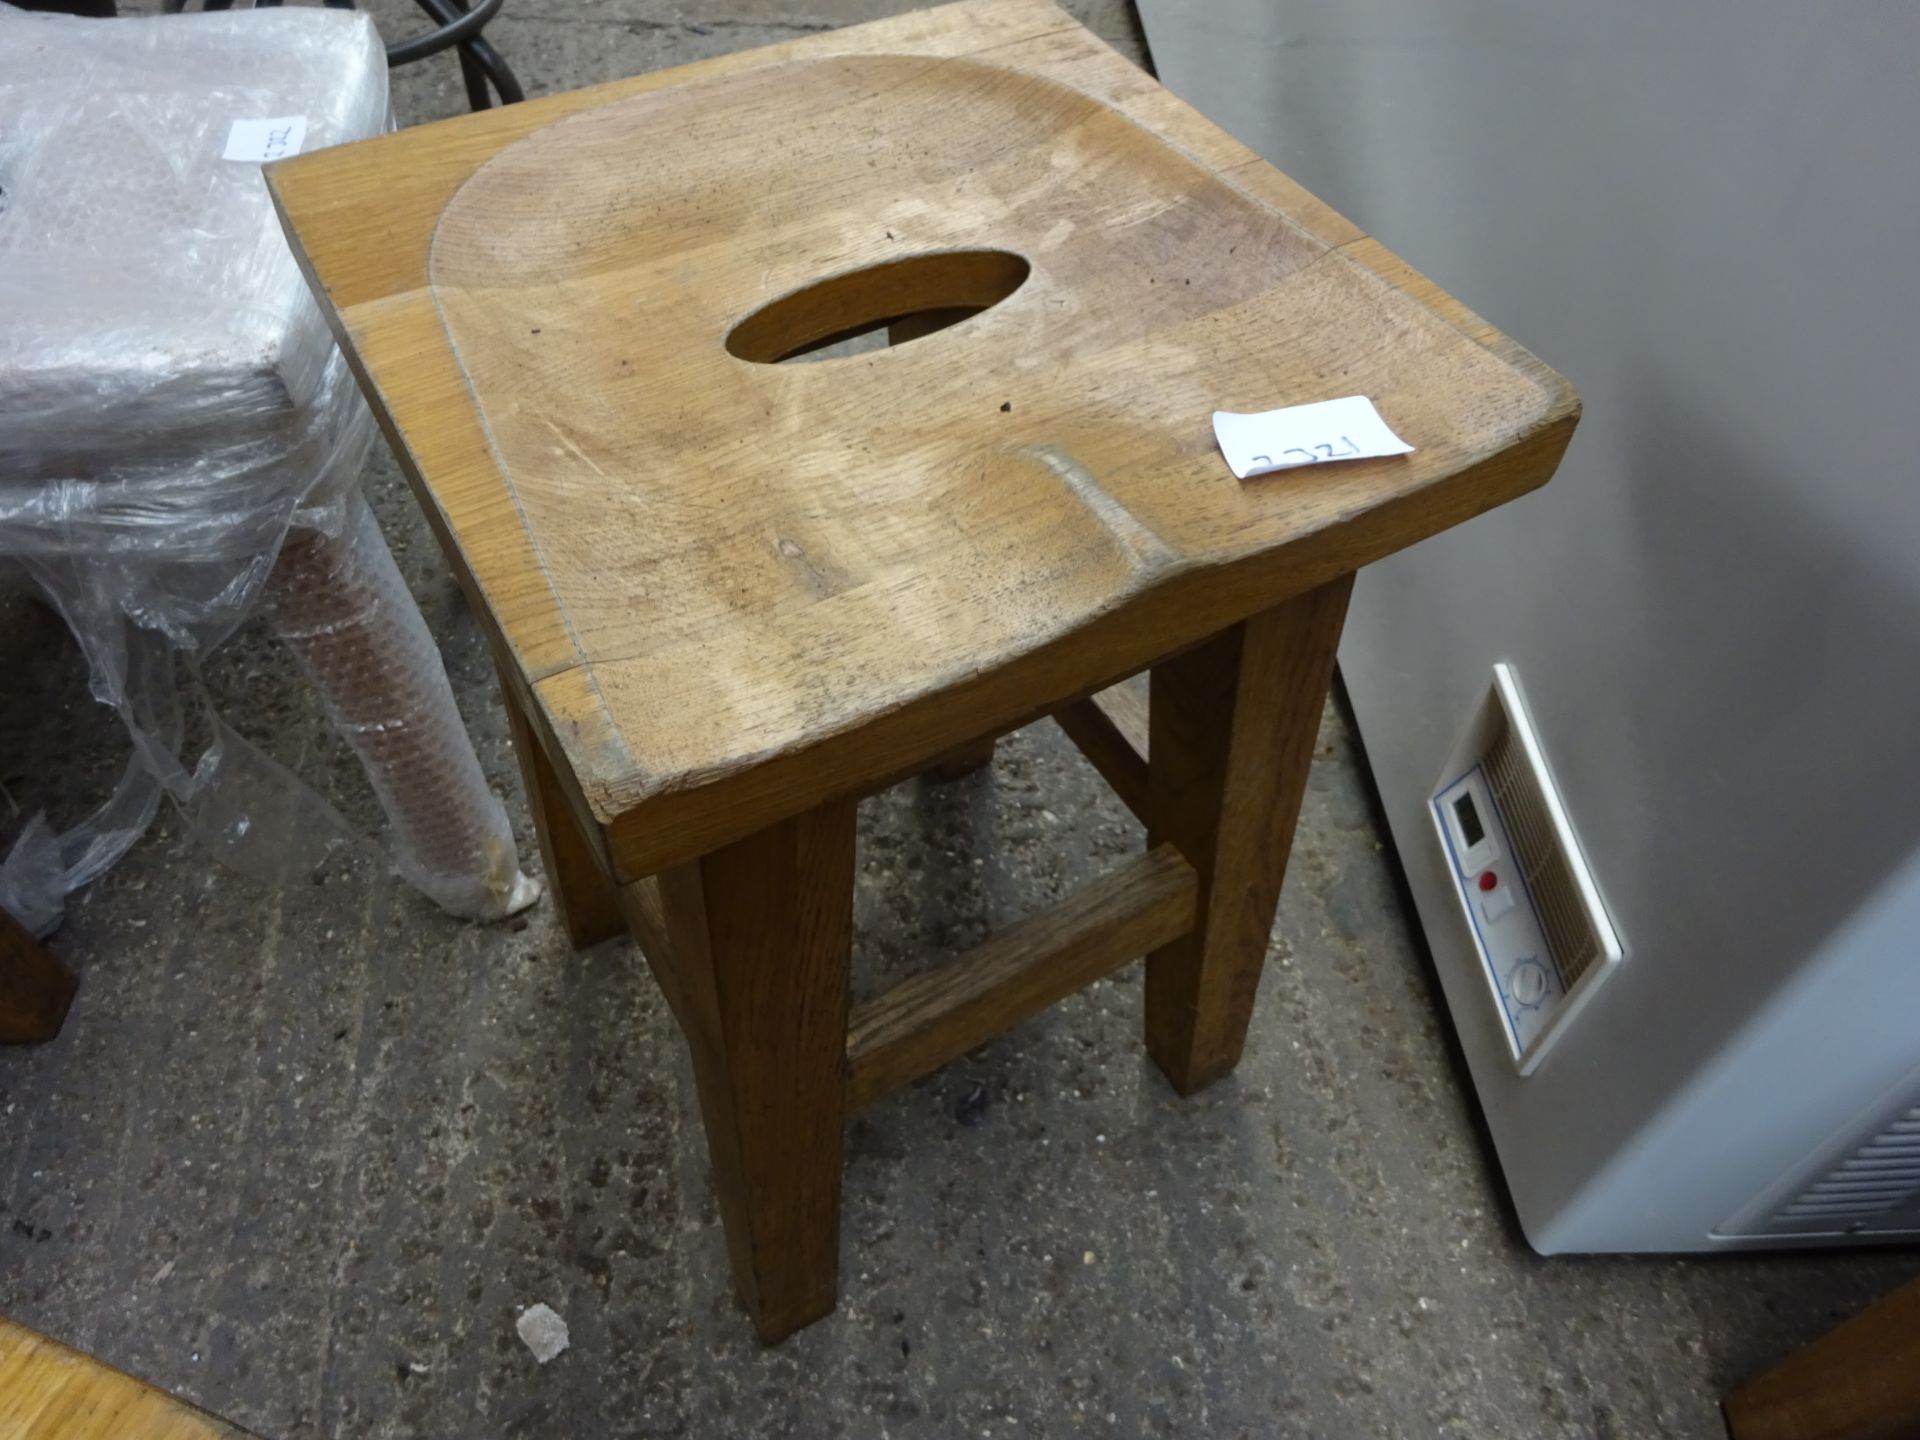 Low oak bar stool.